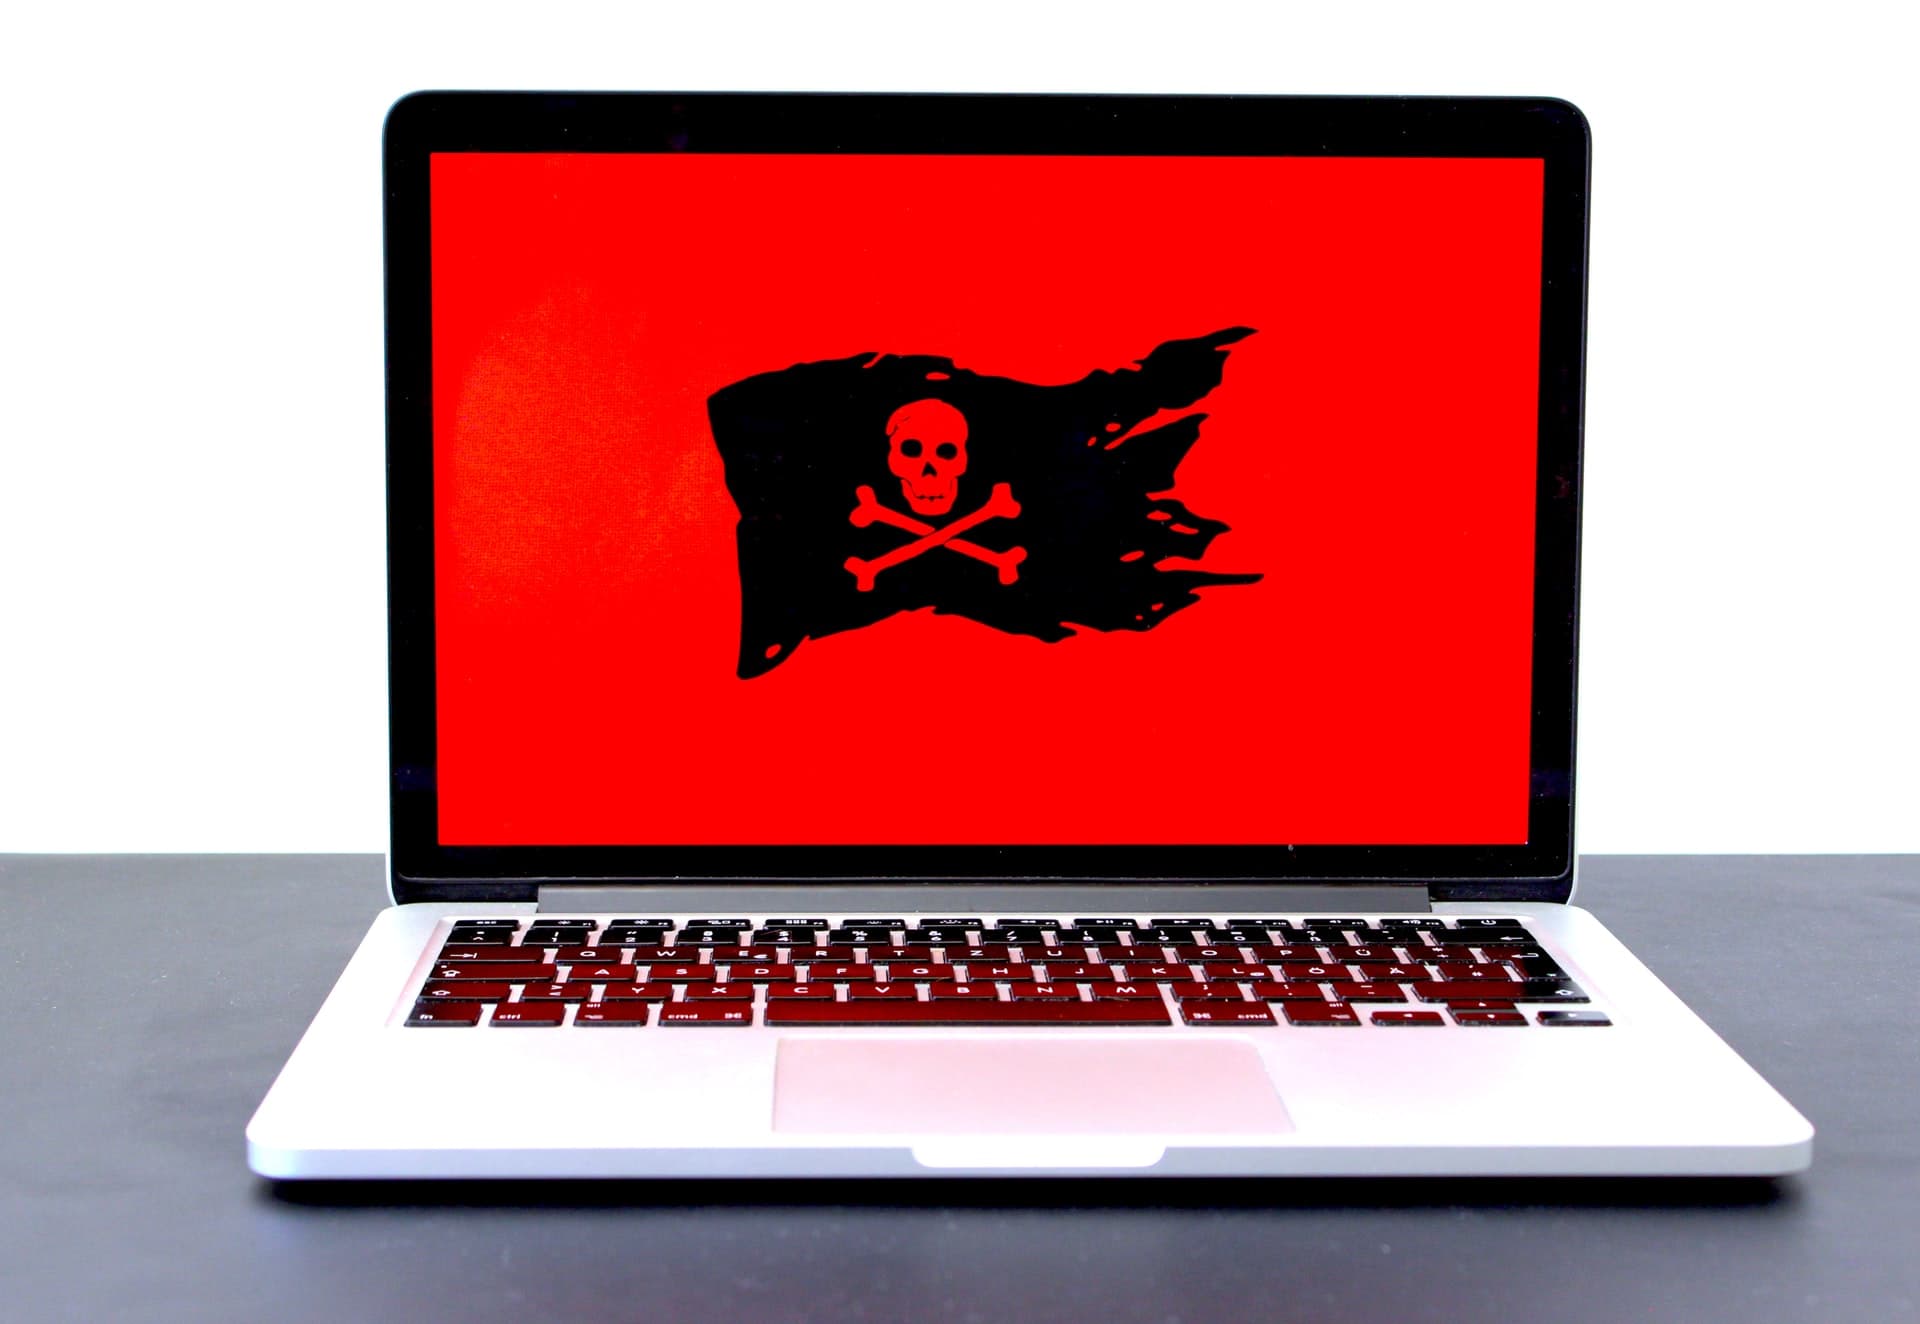 Trojan Virus Anti-Virus Malware PC Desktop Laptop Computer PC